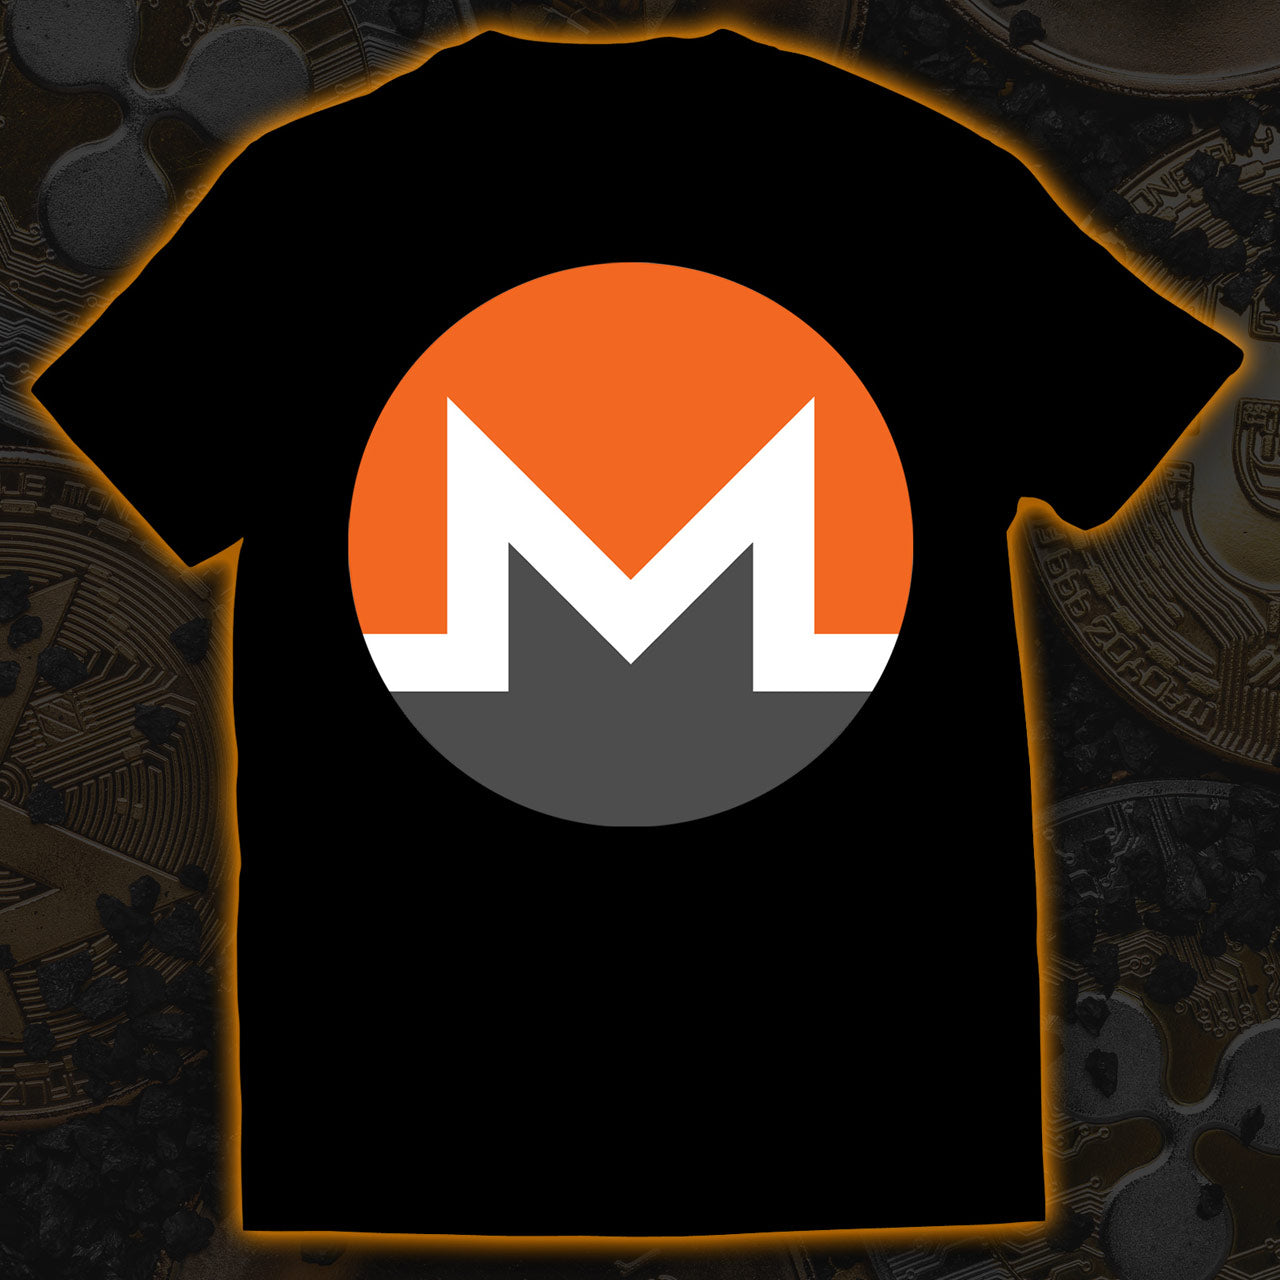 Monero T-Shirt